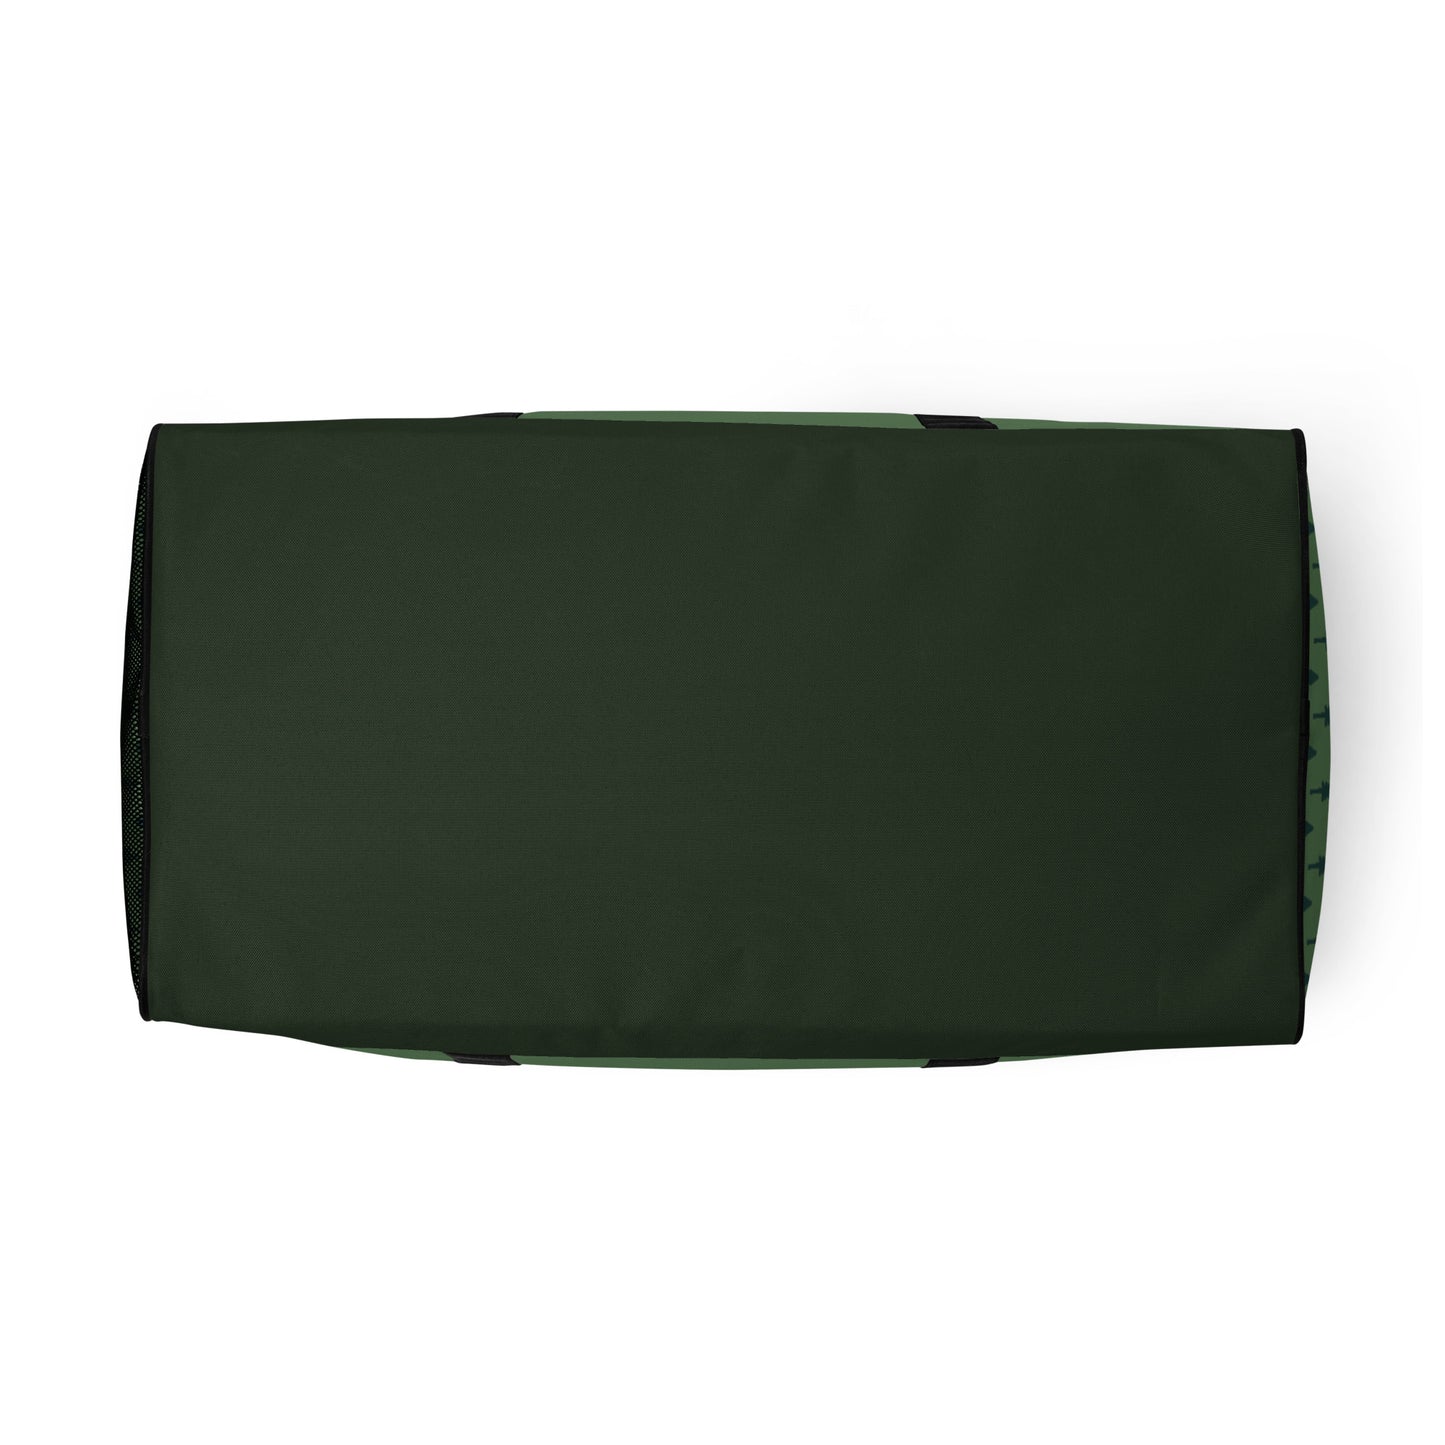 Duffle bag green